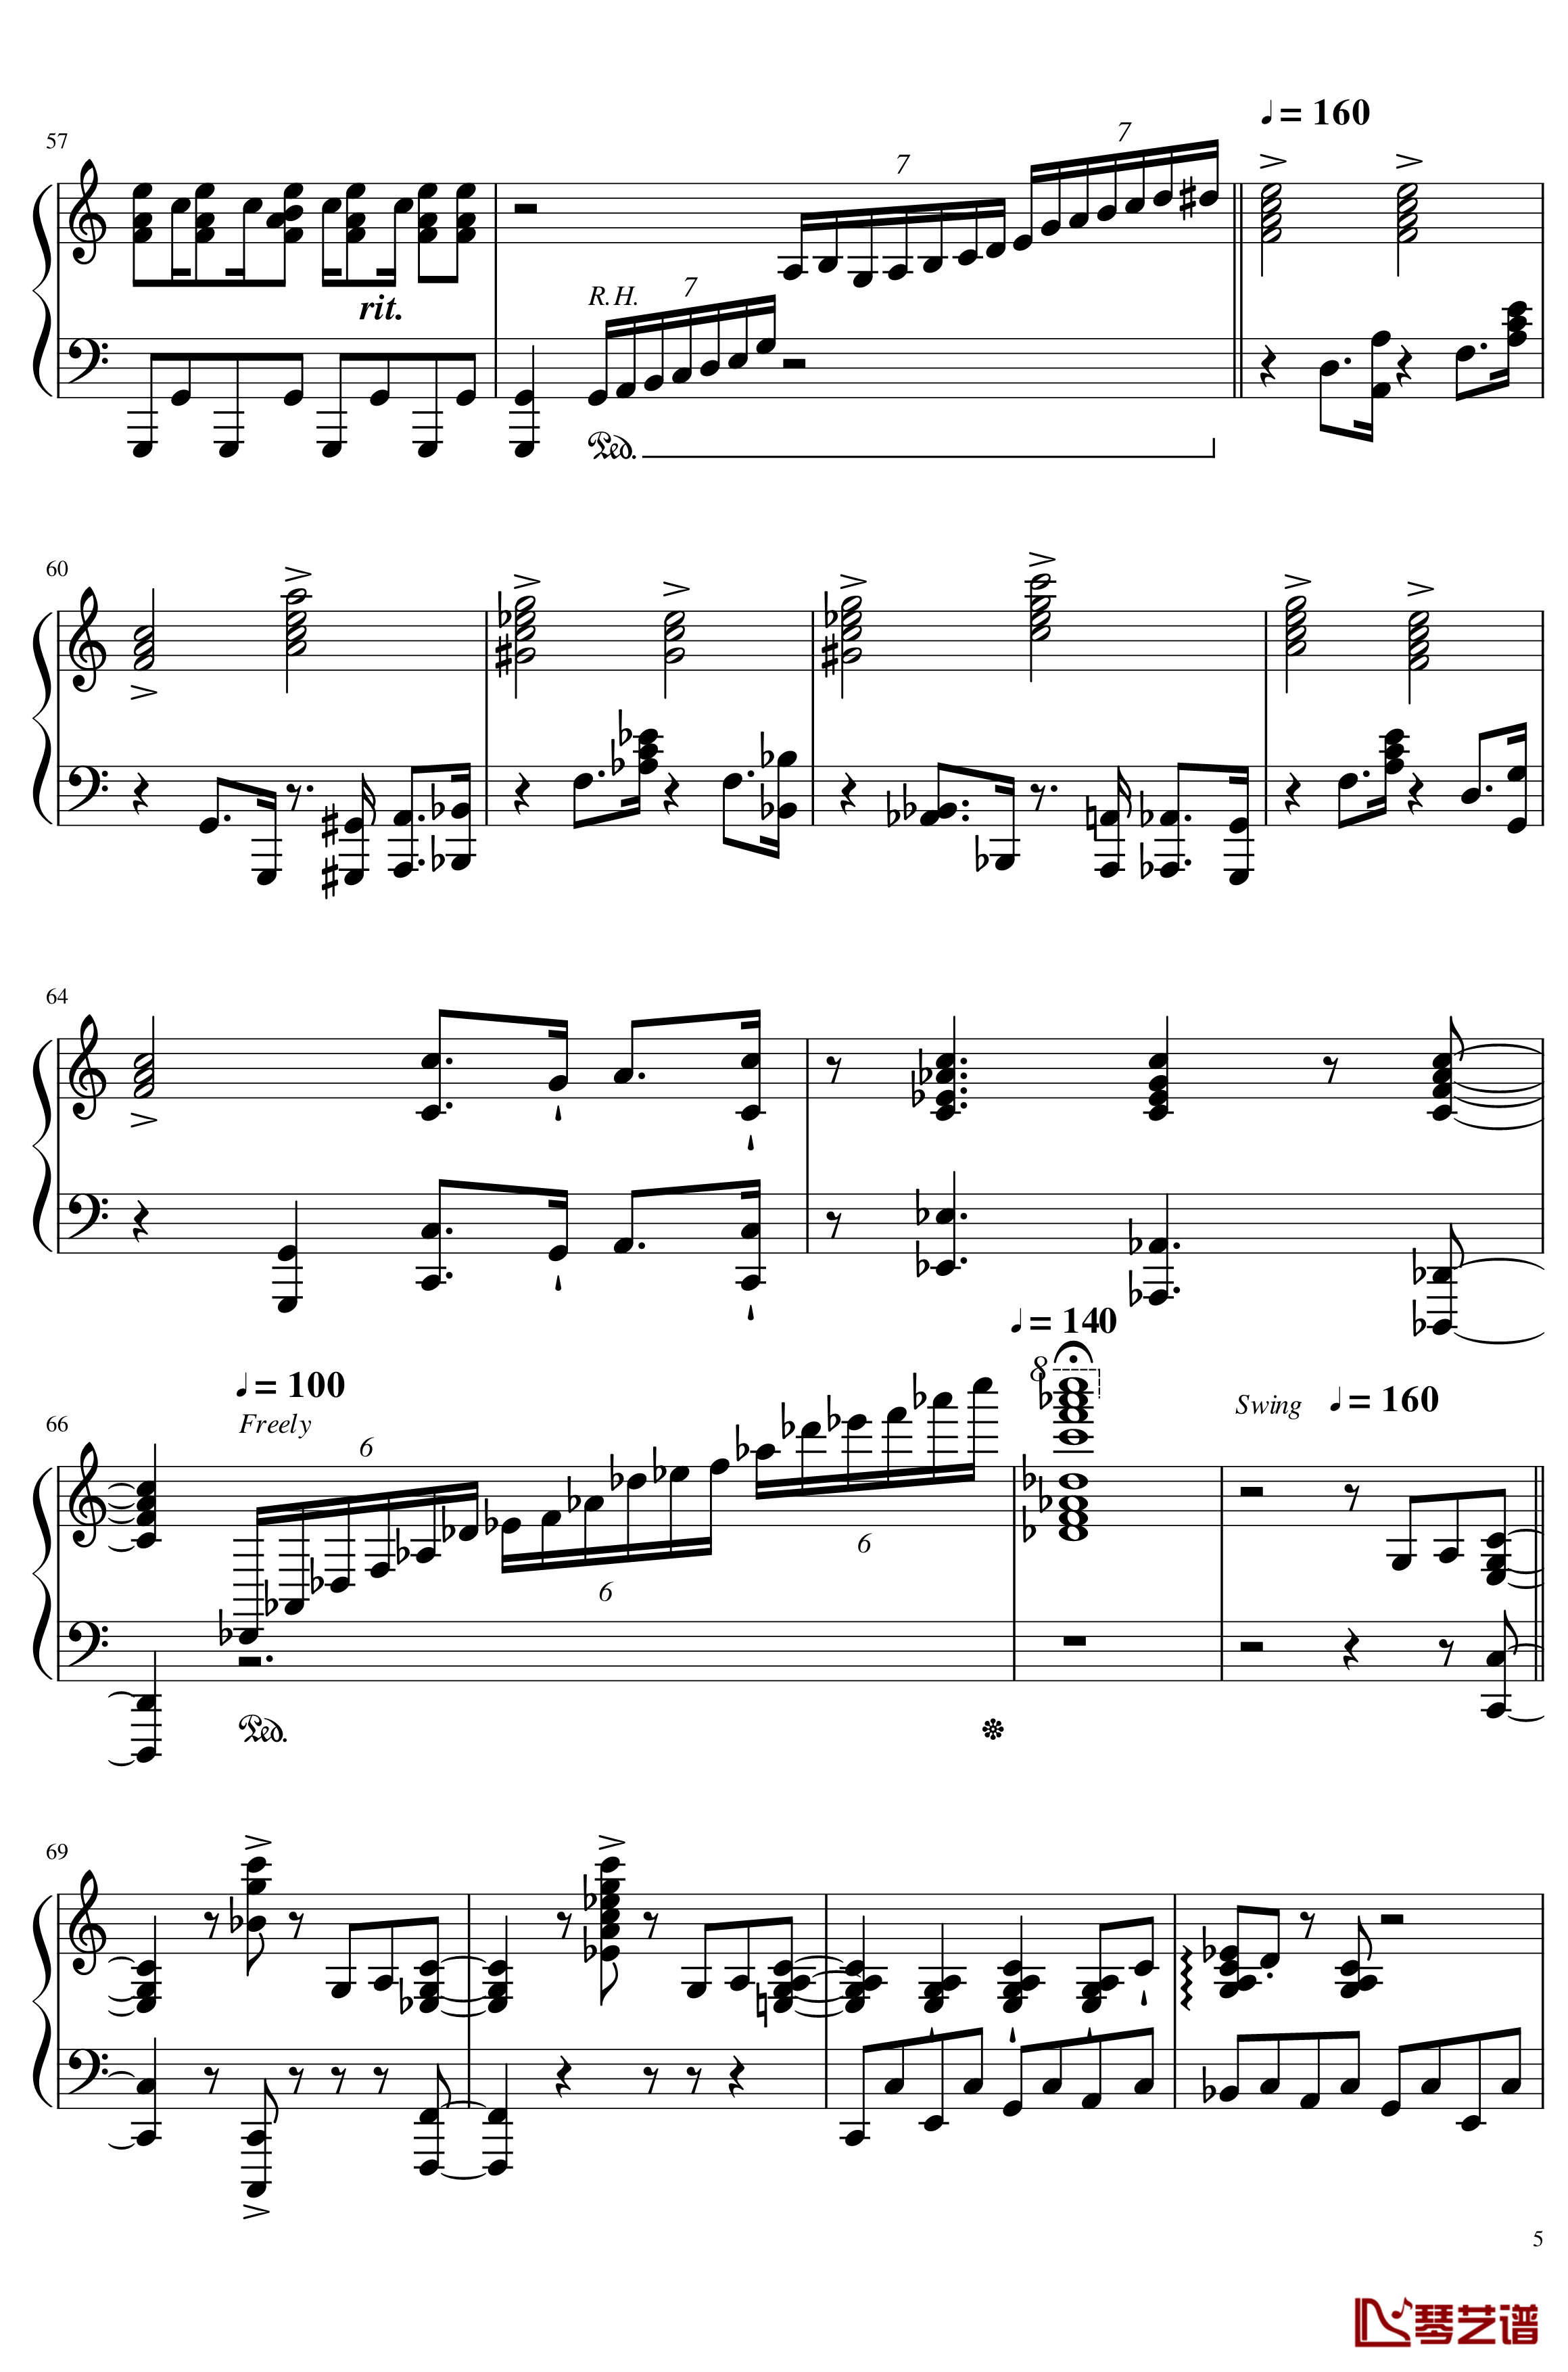 马里奥合集-Mix钢琴谱-超级玛丽5